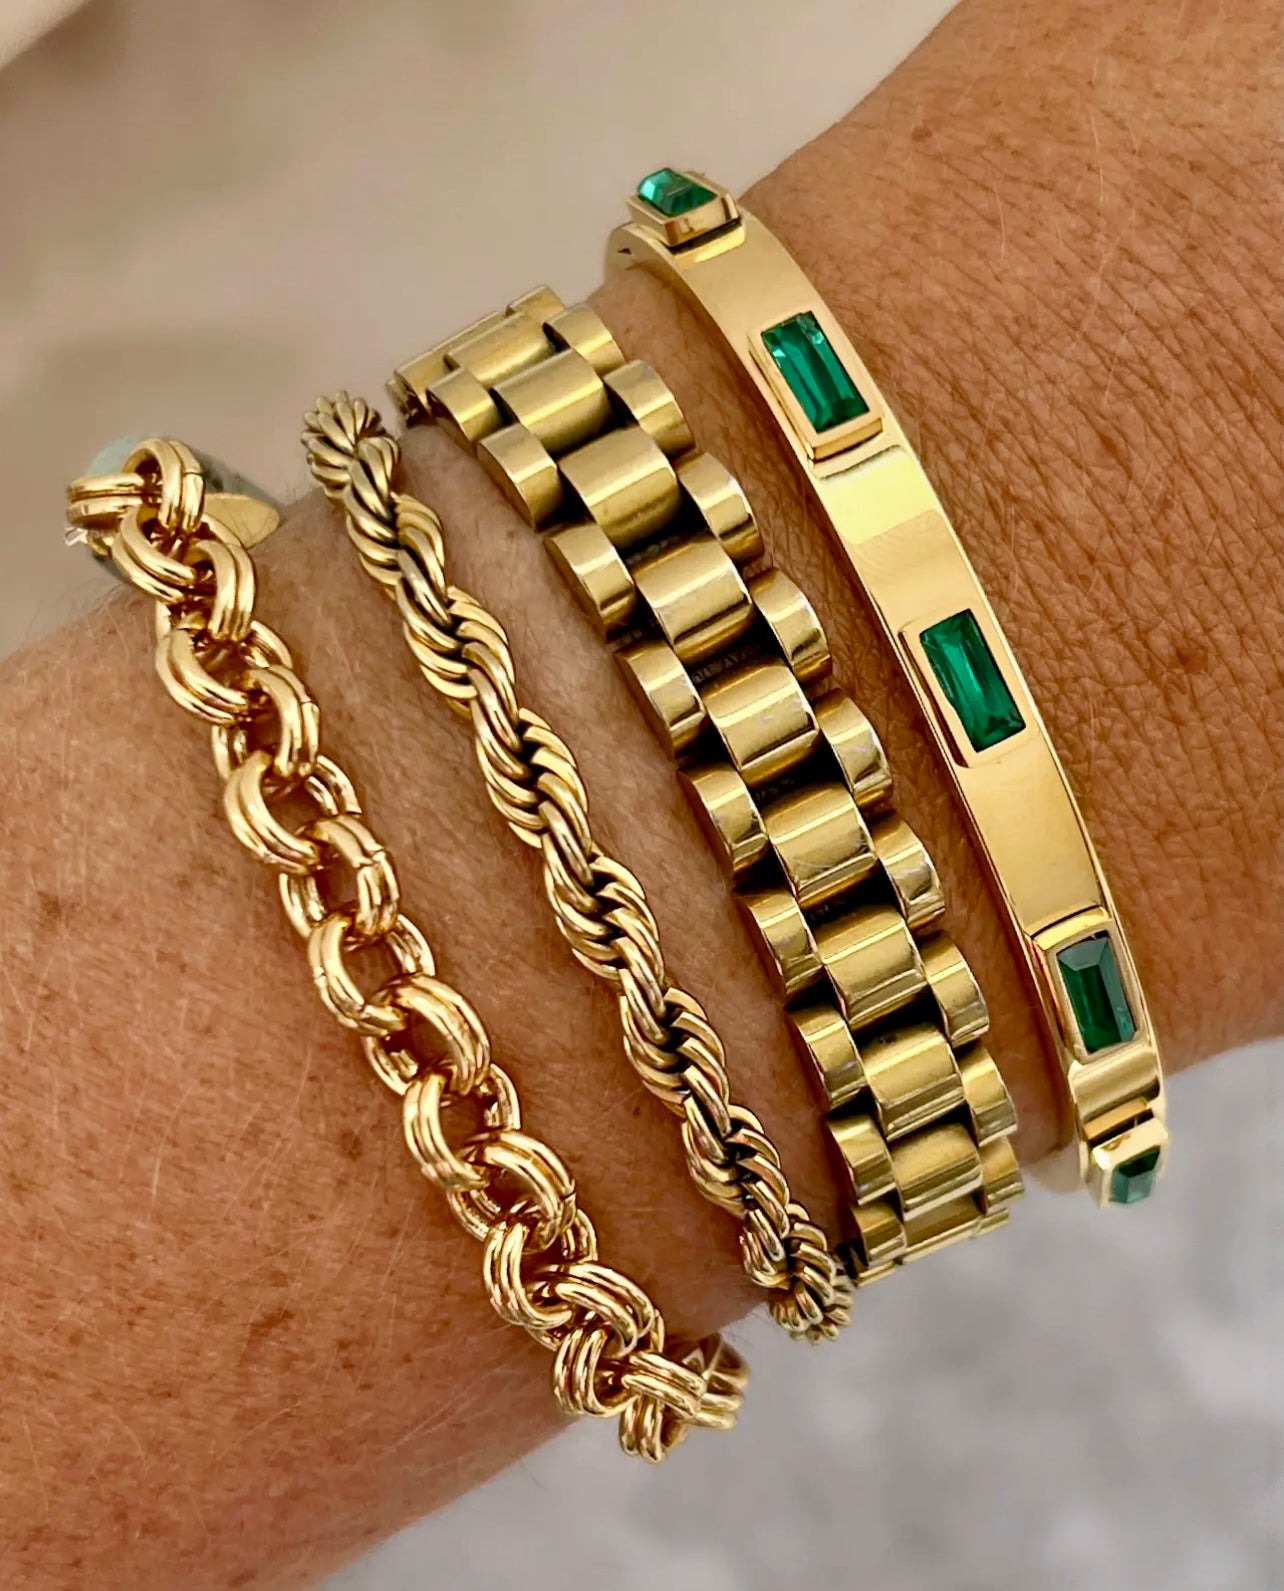 Belinda Gold Jewel Bracelet